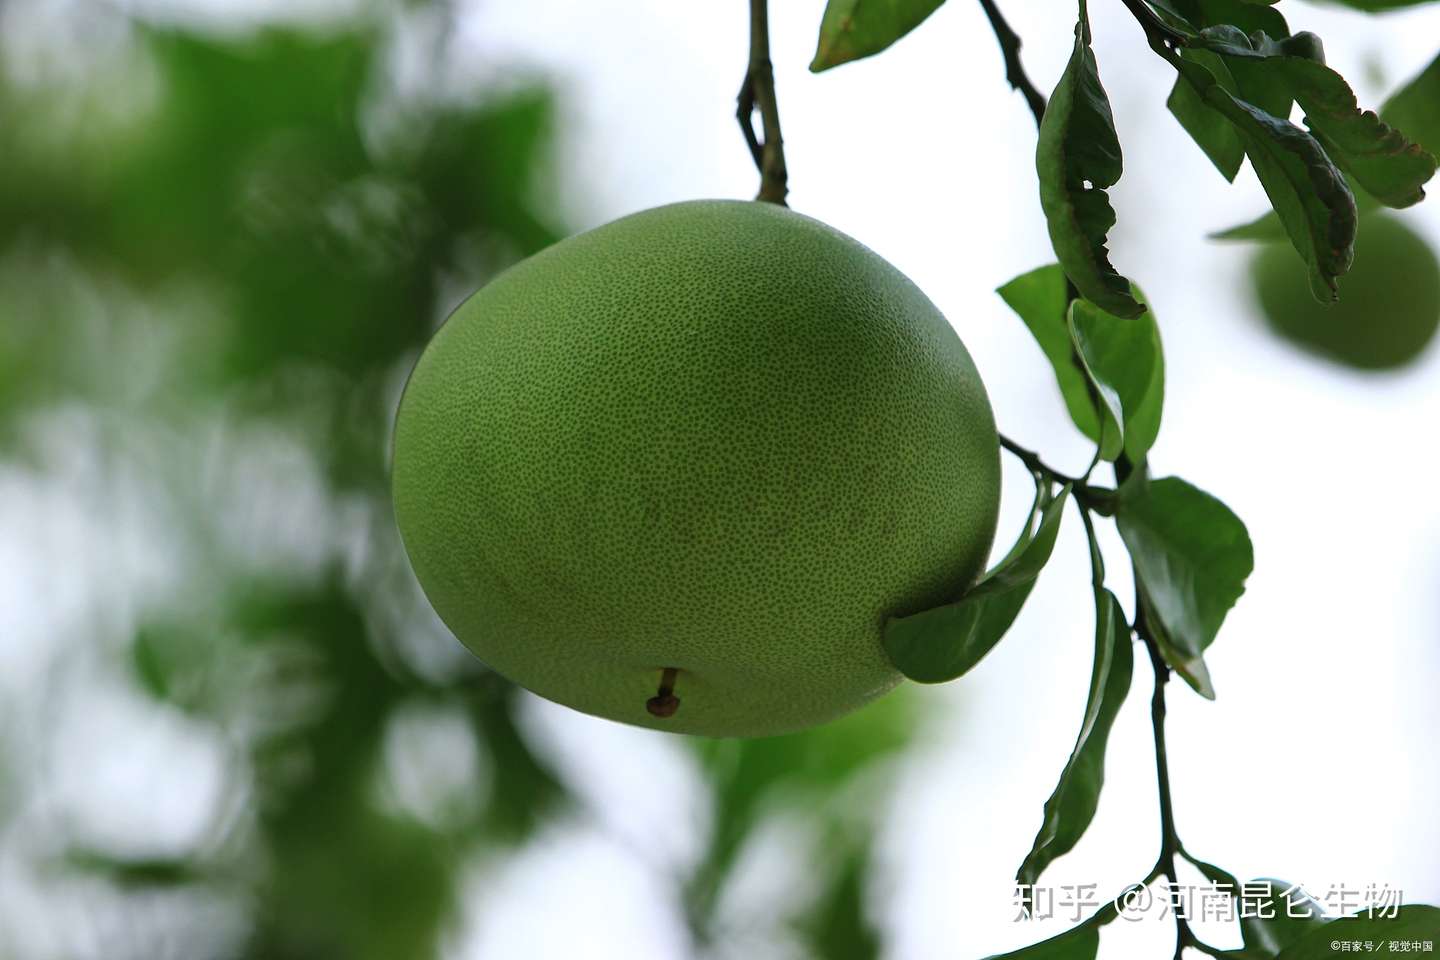 柚子生长期用哪种肥料合适 柚子上色用调色师叶面肥 知乎